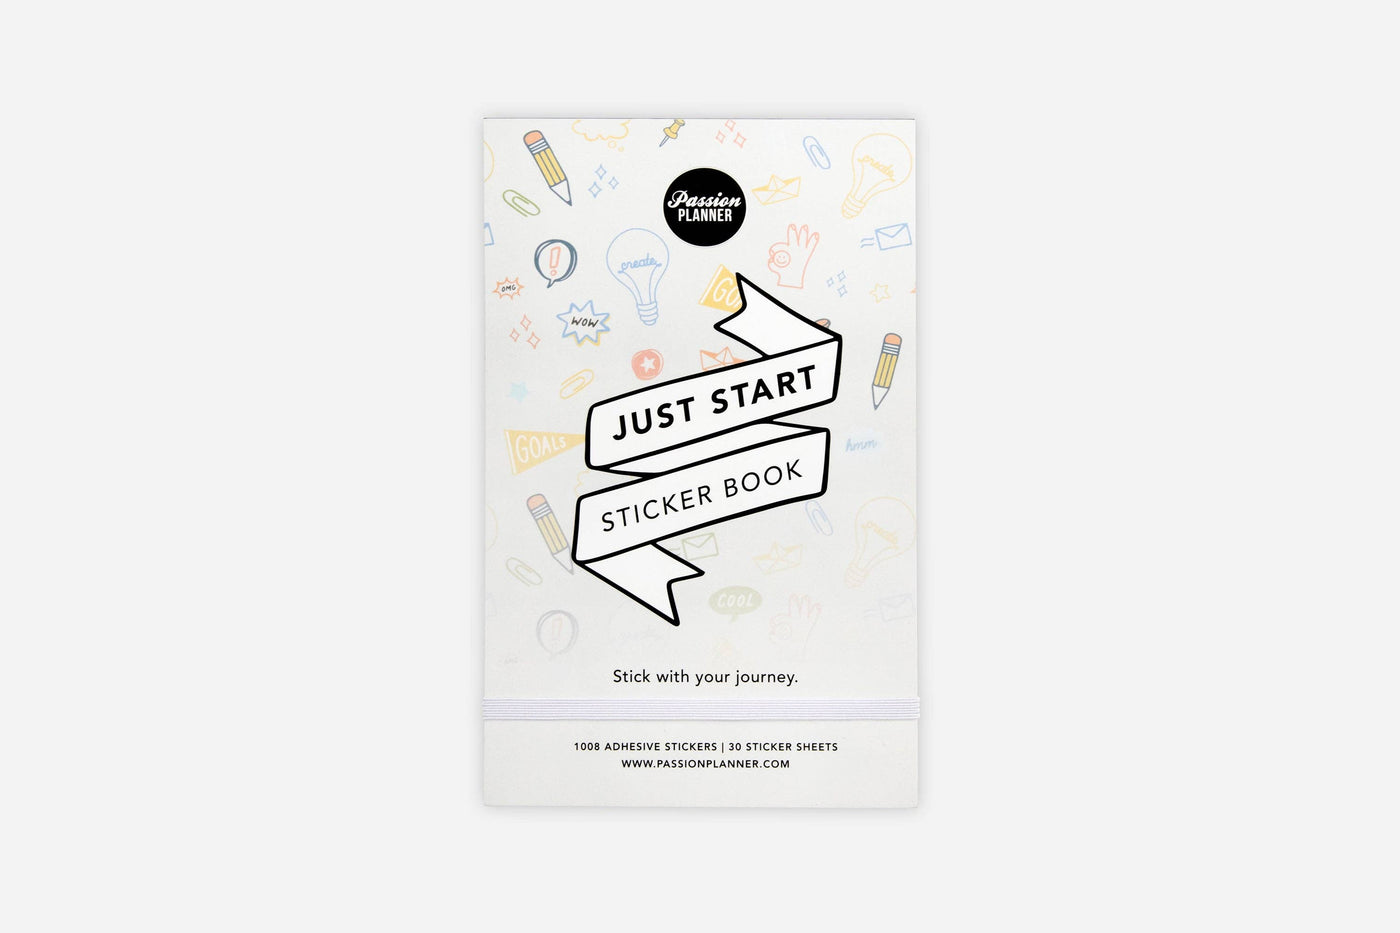 Passion Planner - Just Start Sticker Book